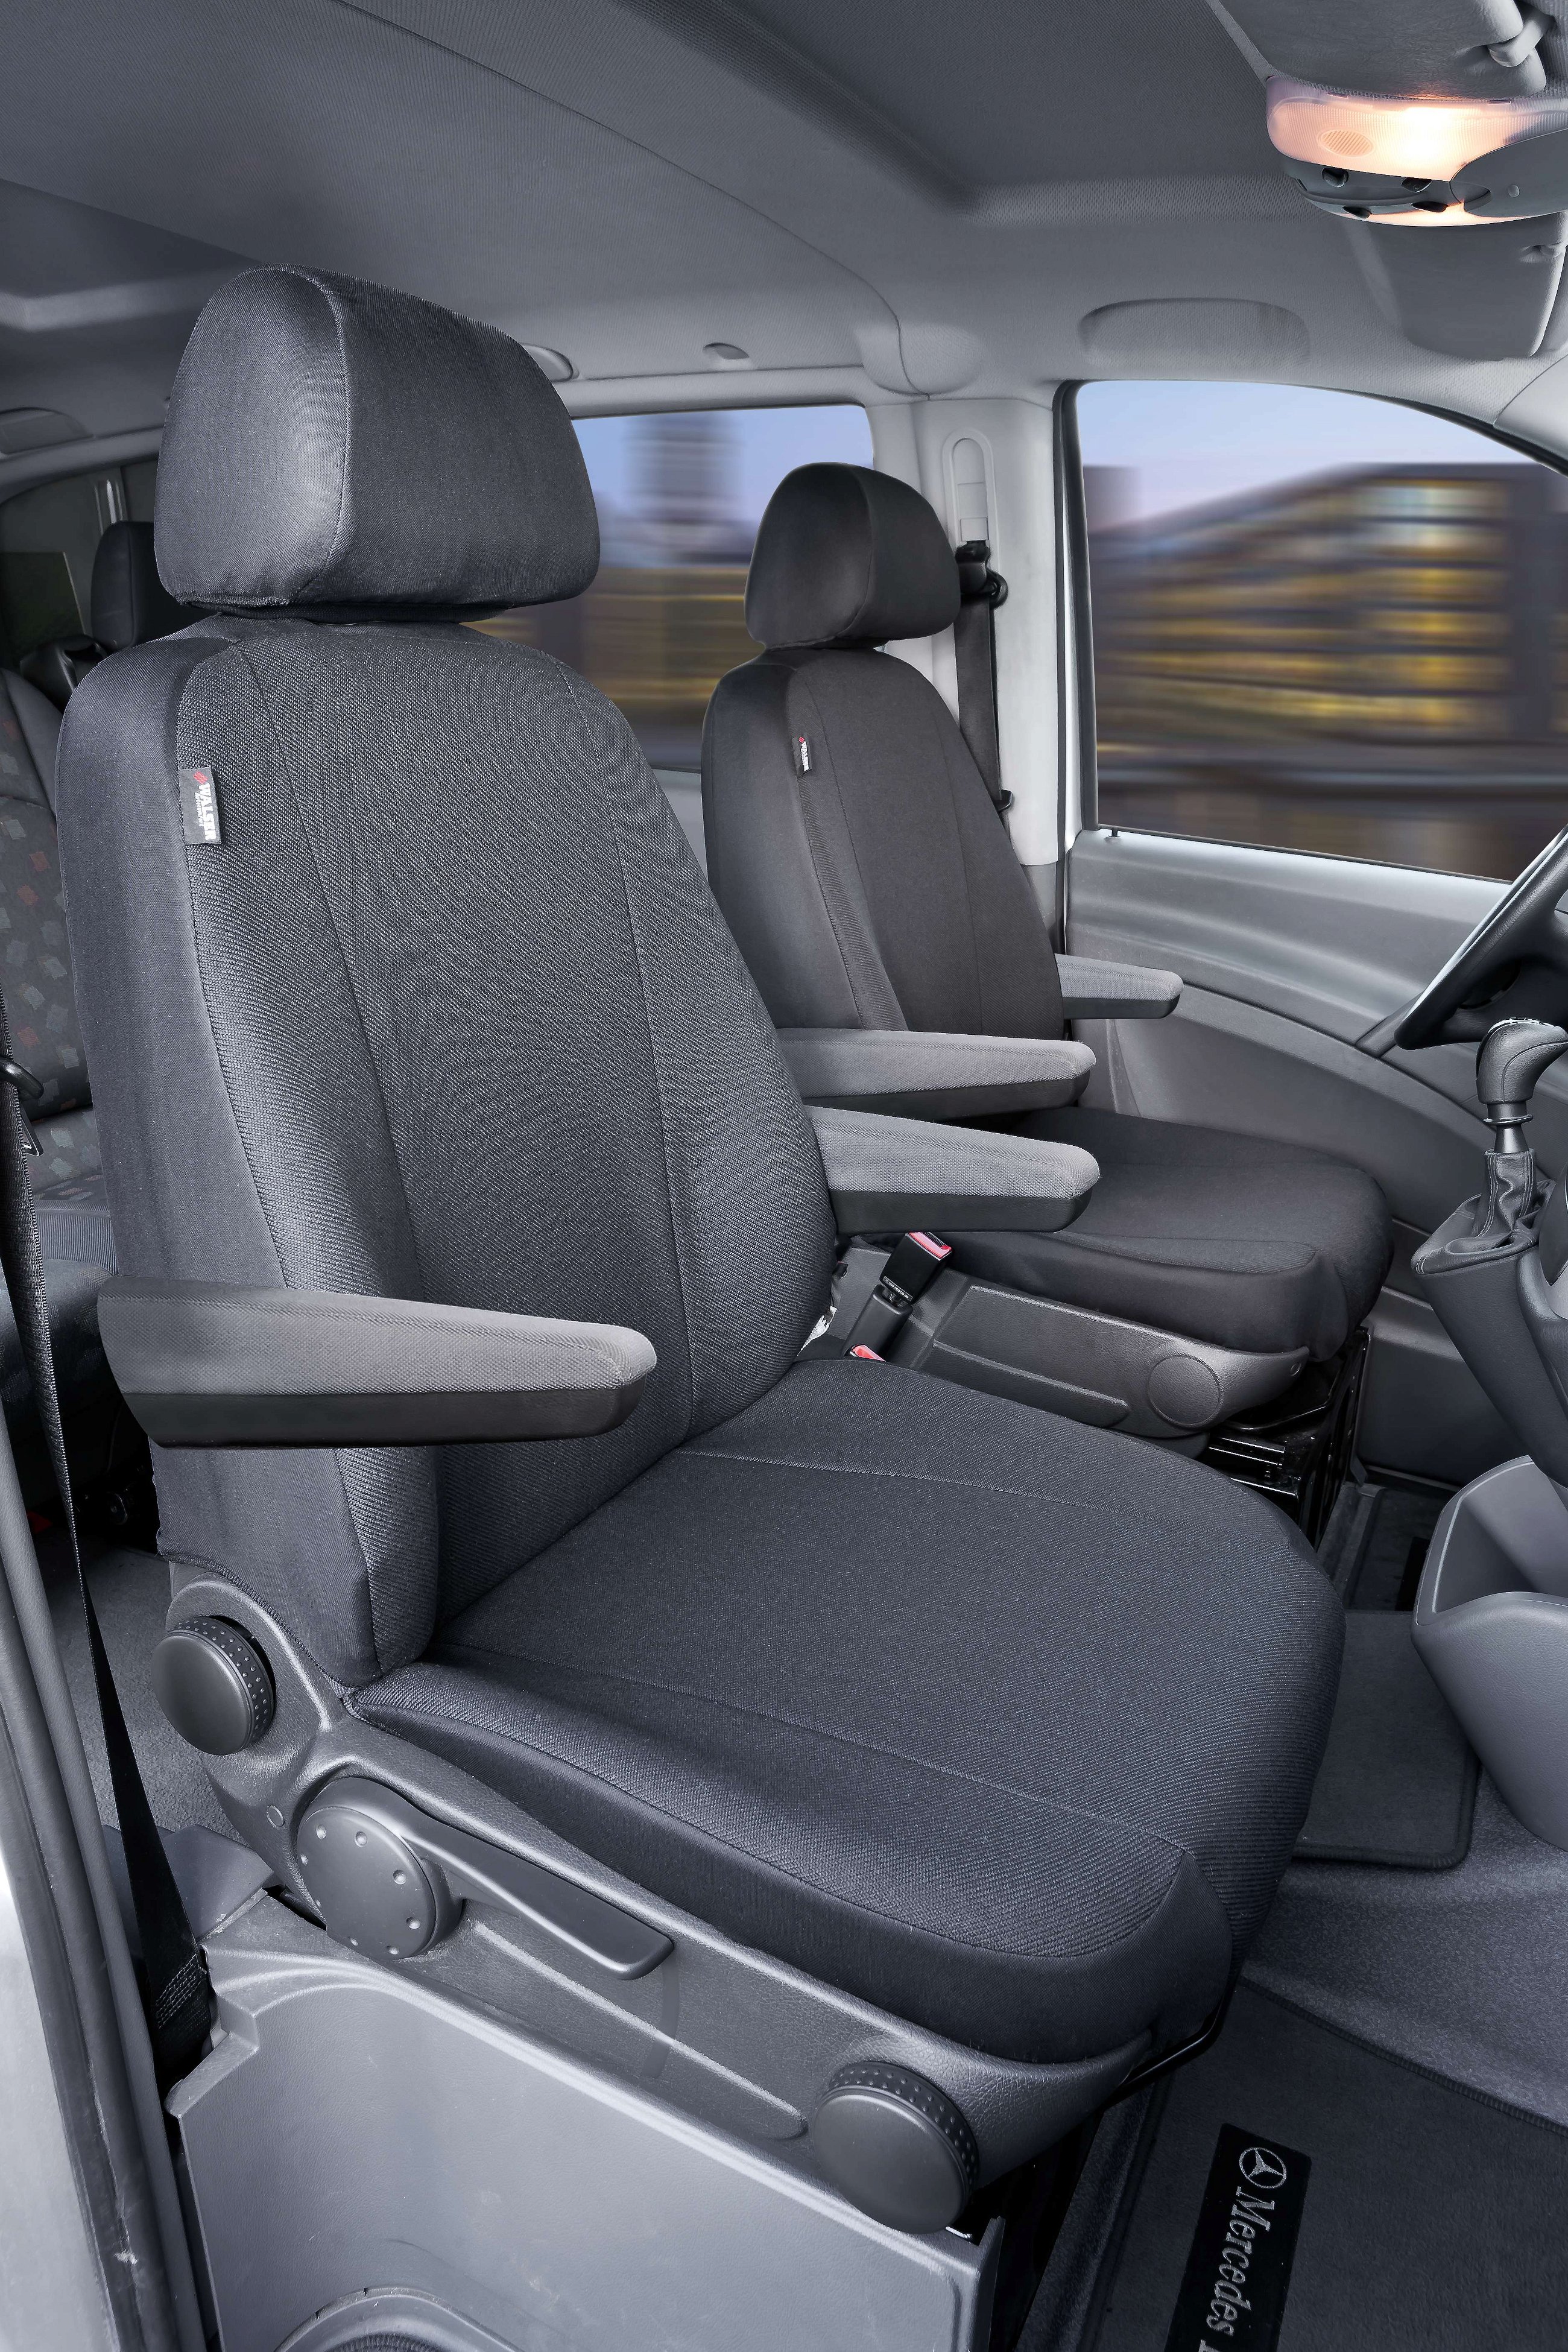 Housse de siège Transporter en tissu pour Mercedes Vito/Viano, 2 sièges simples pour accoudoir à l'intérieur et extérieur